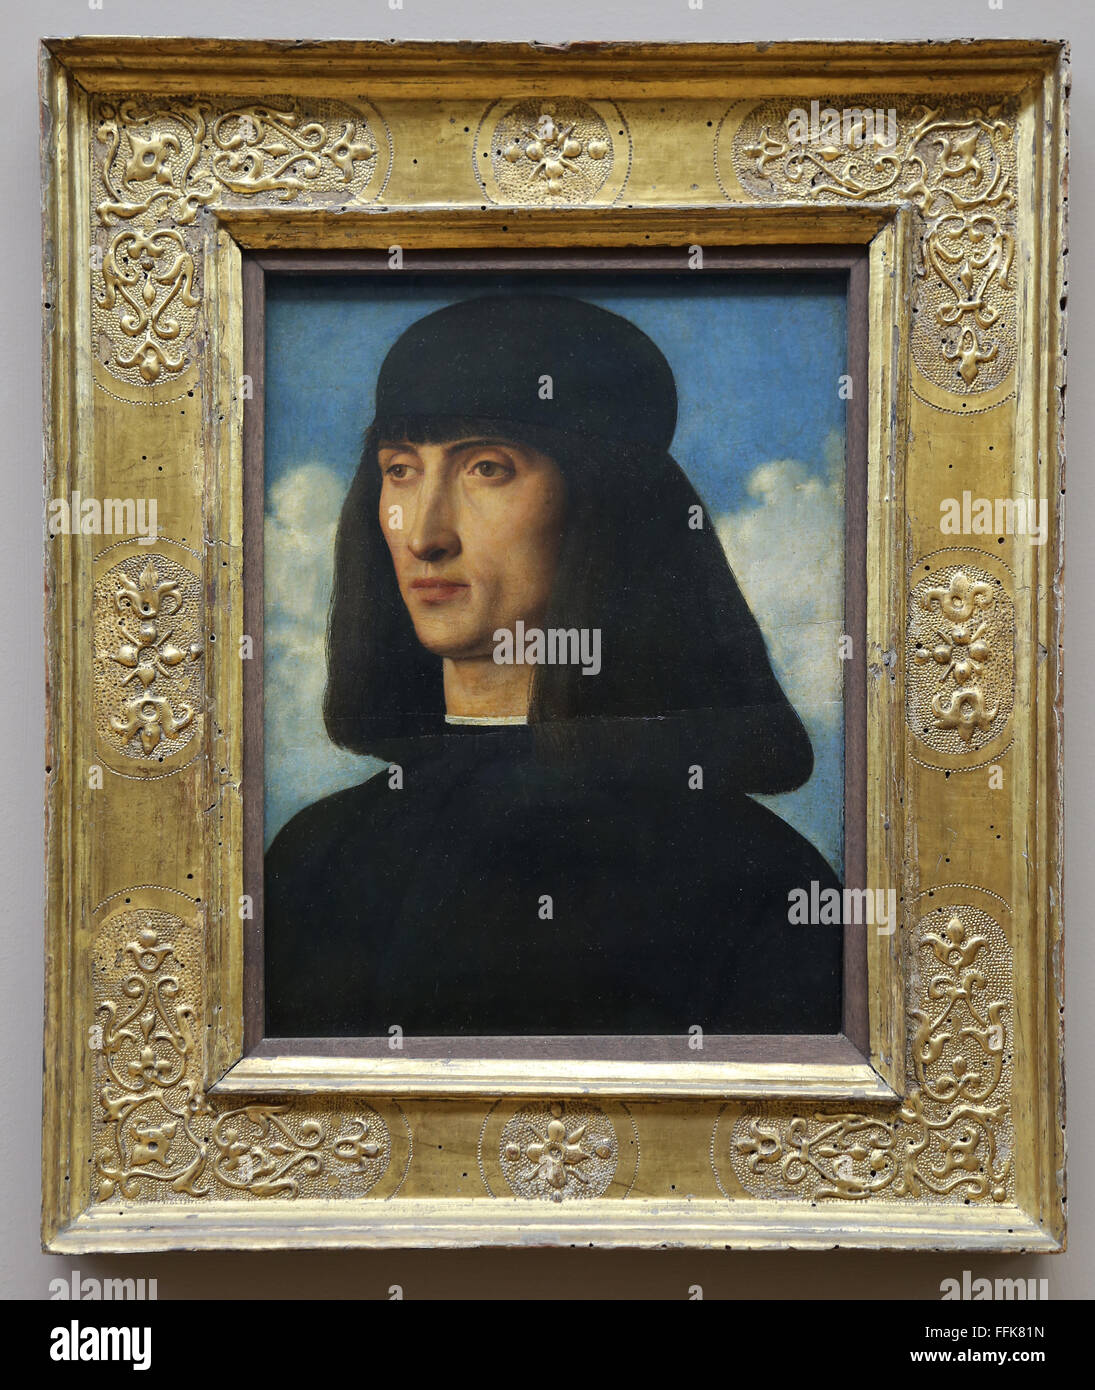 Pittore italiano Giovanni Bellini (1430-1516). Ritratto di un uomo. Il museo del Louvre. Parigi. La Francia. Renaissance. Foto Stock